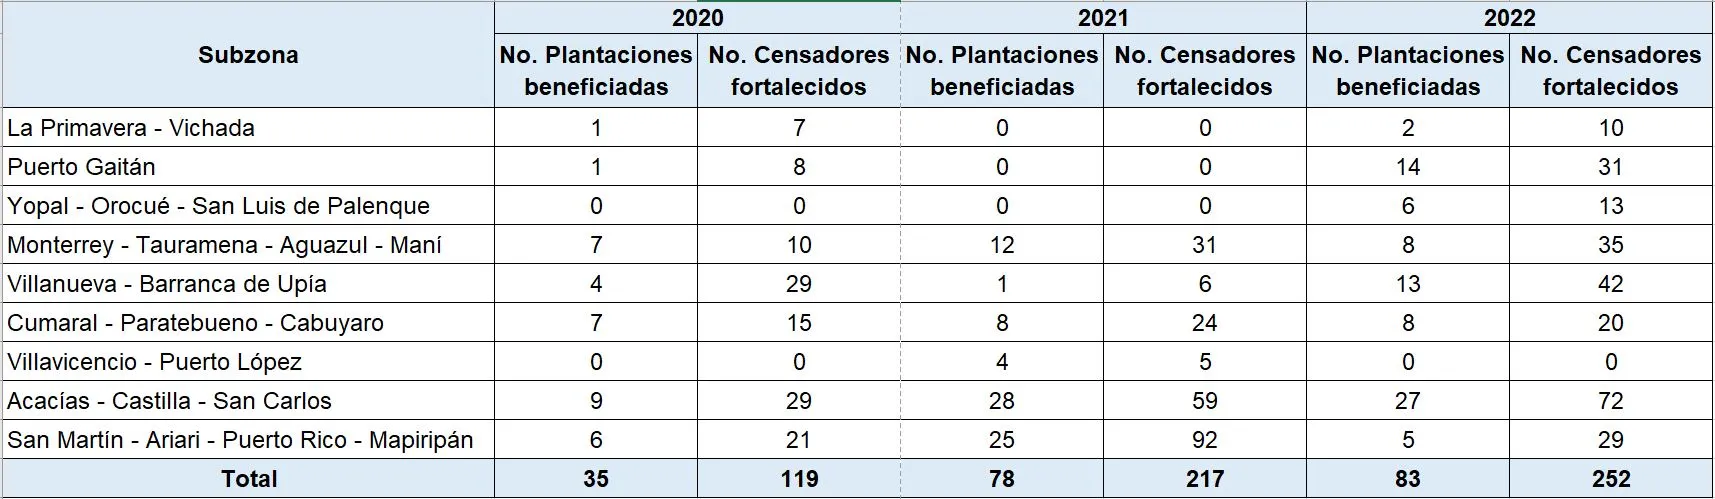 Número de censadores fortalecidos por subzona palmera durante el periodo 2020-2022